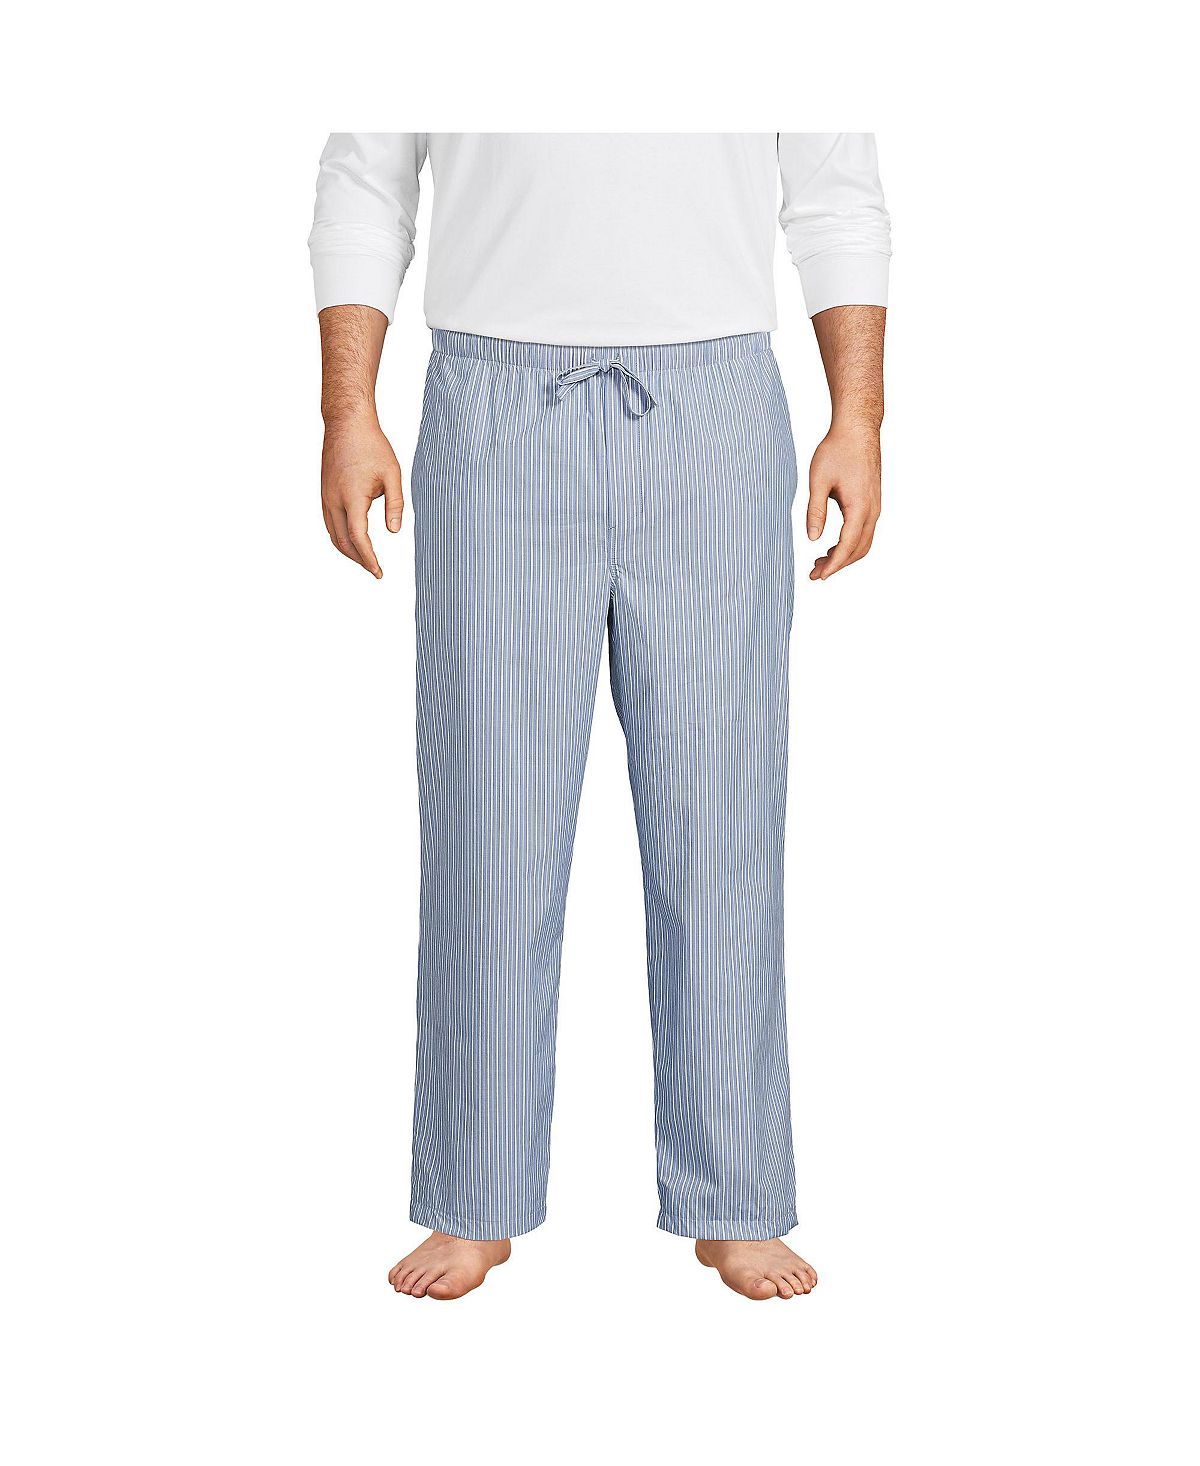 Мужские большие и высокие пижамные брюки из поплина Lands' End розовые классические пижамные штаны tom ford